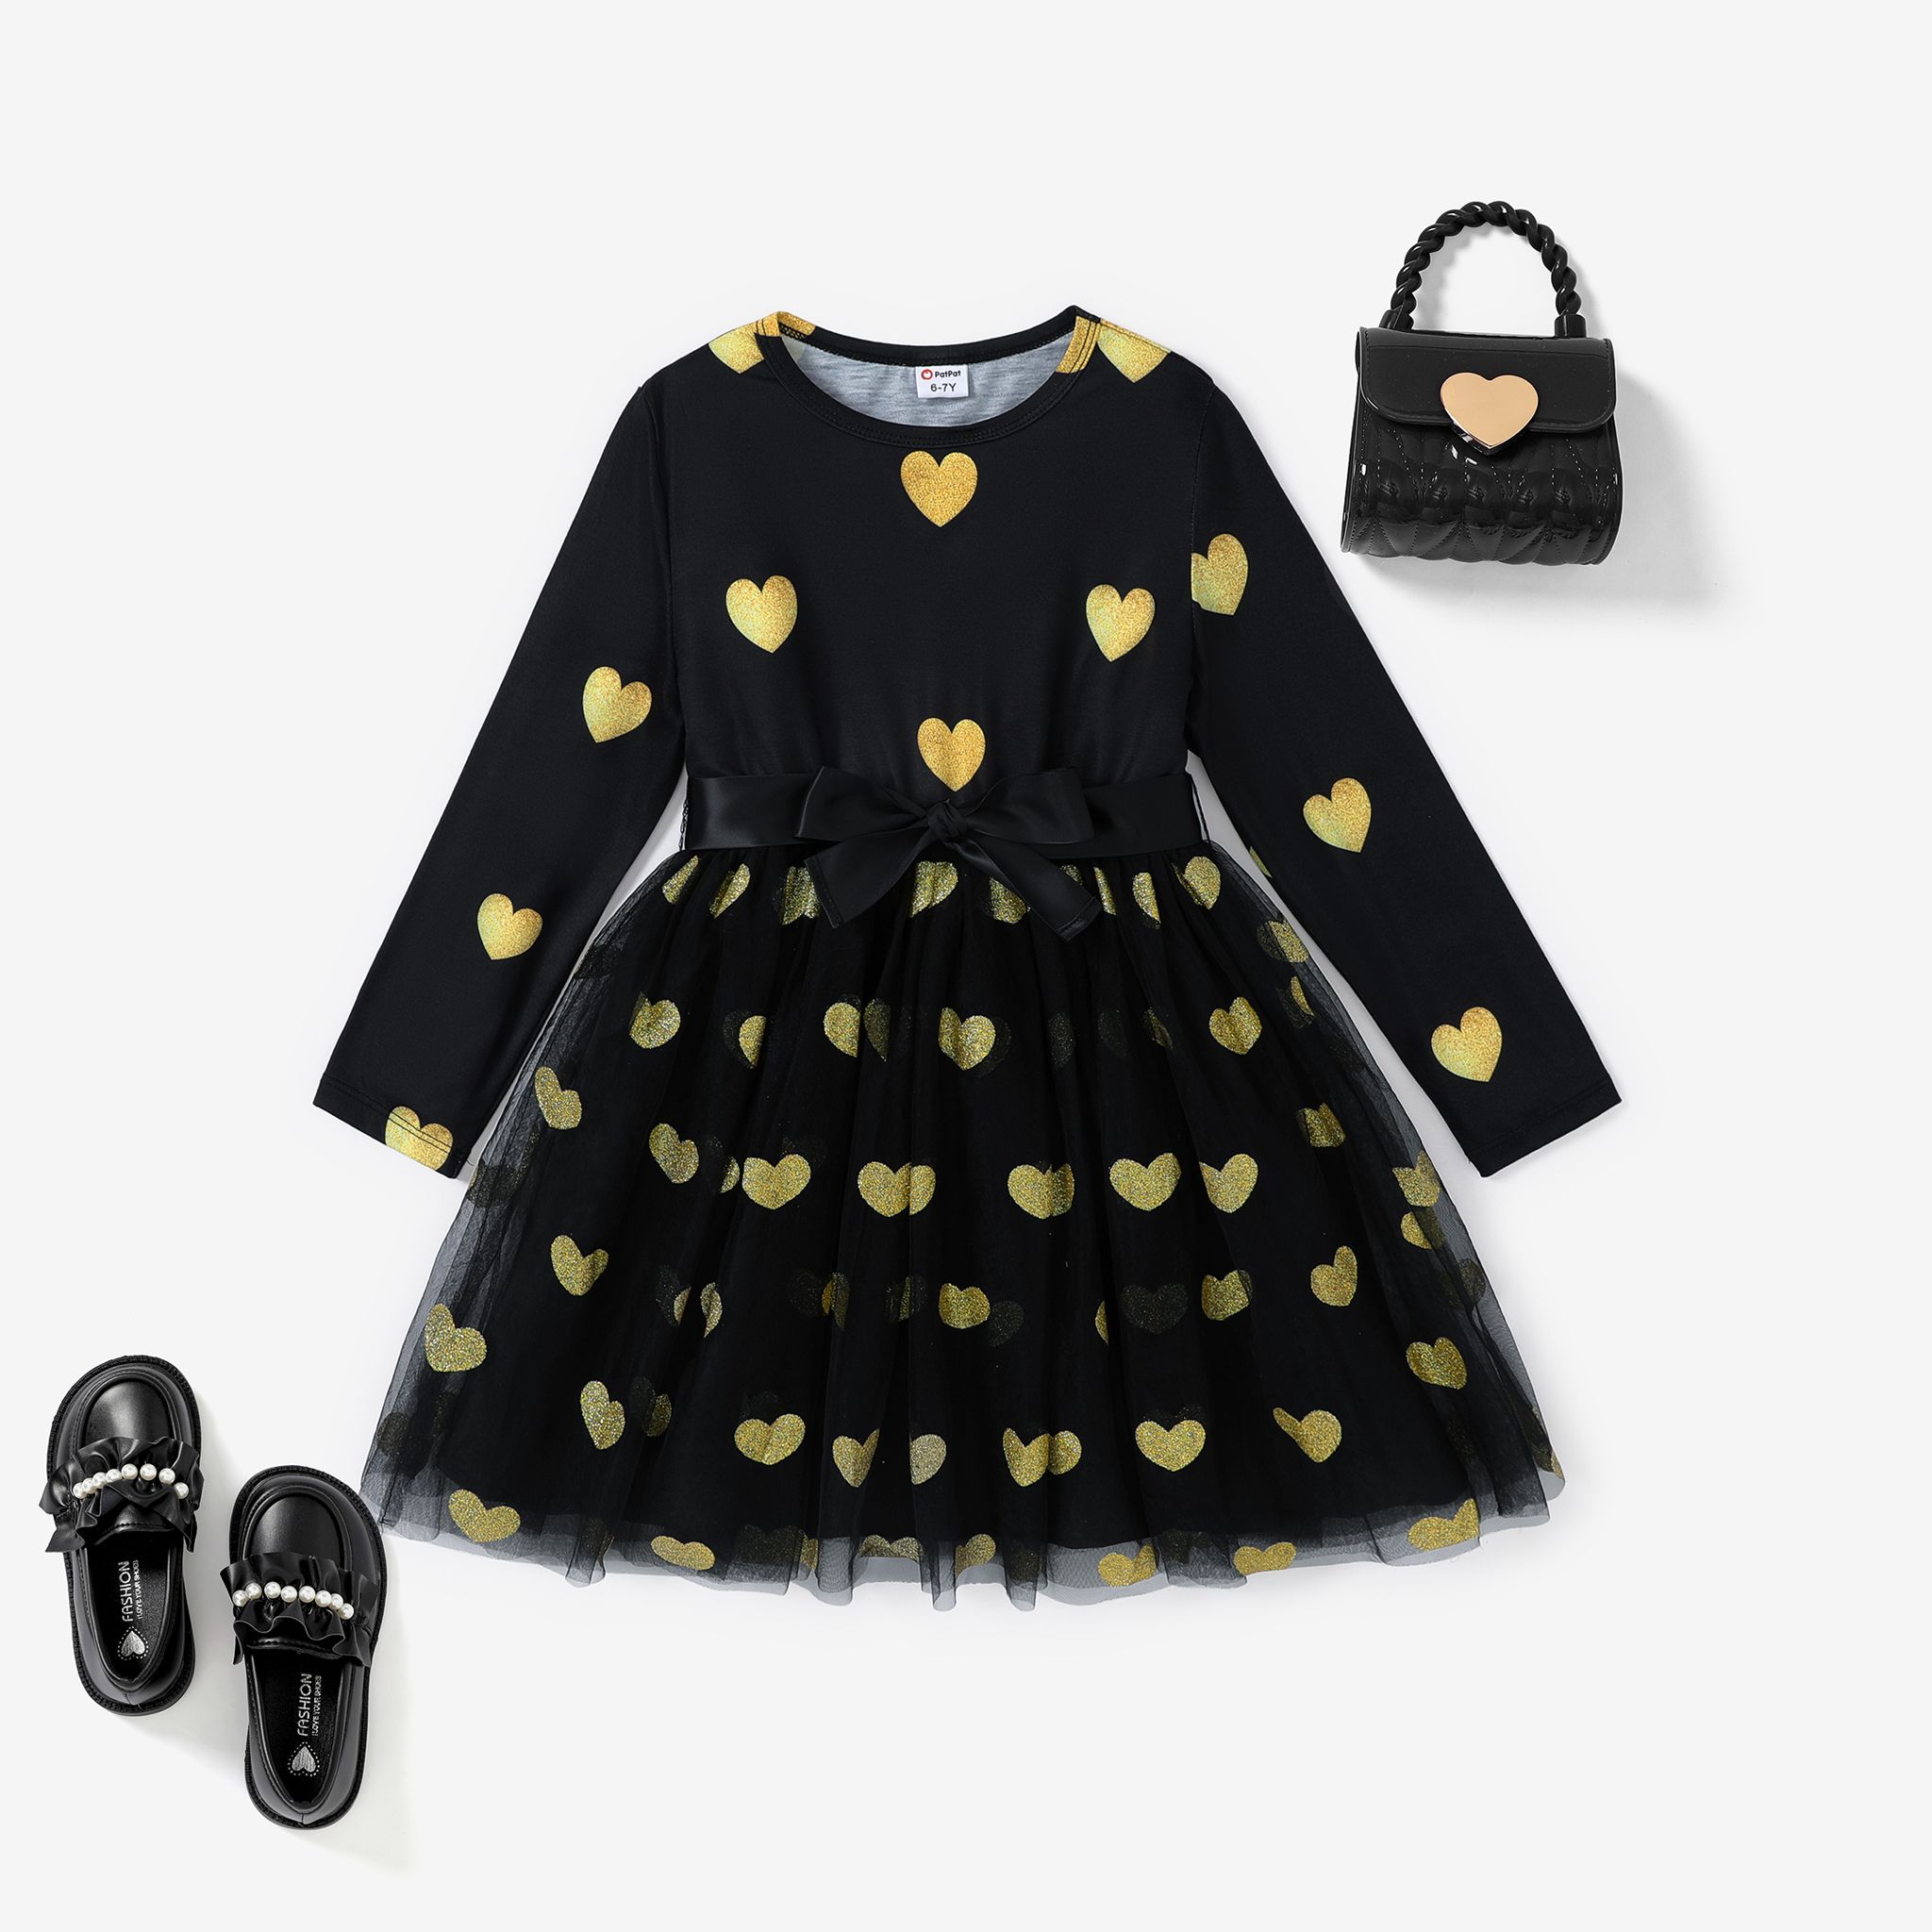 Kid Girls Heart-shaped Multi-layered Mesh Dress For Machine Wash